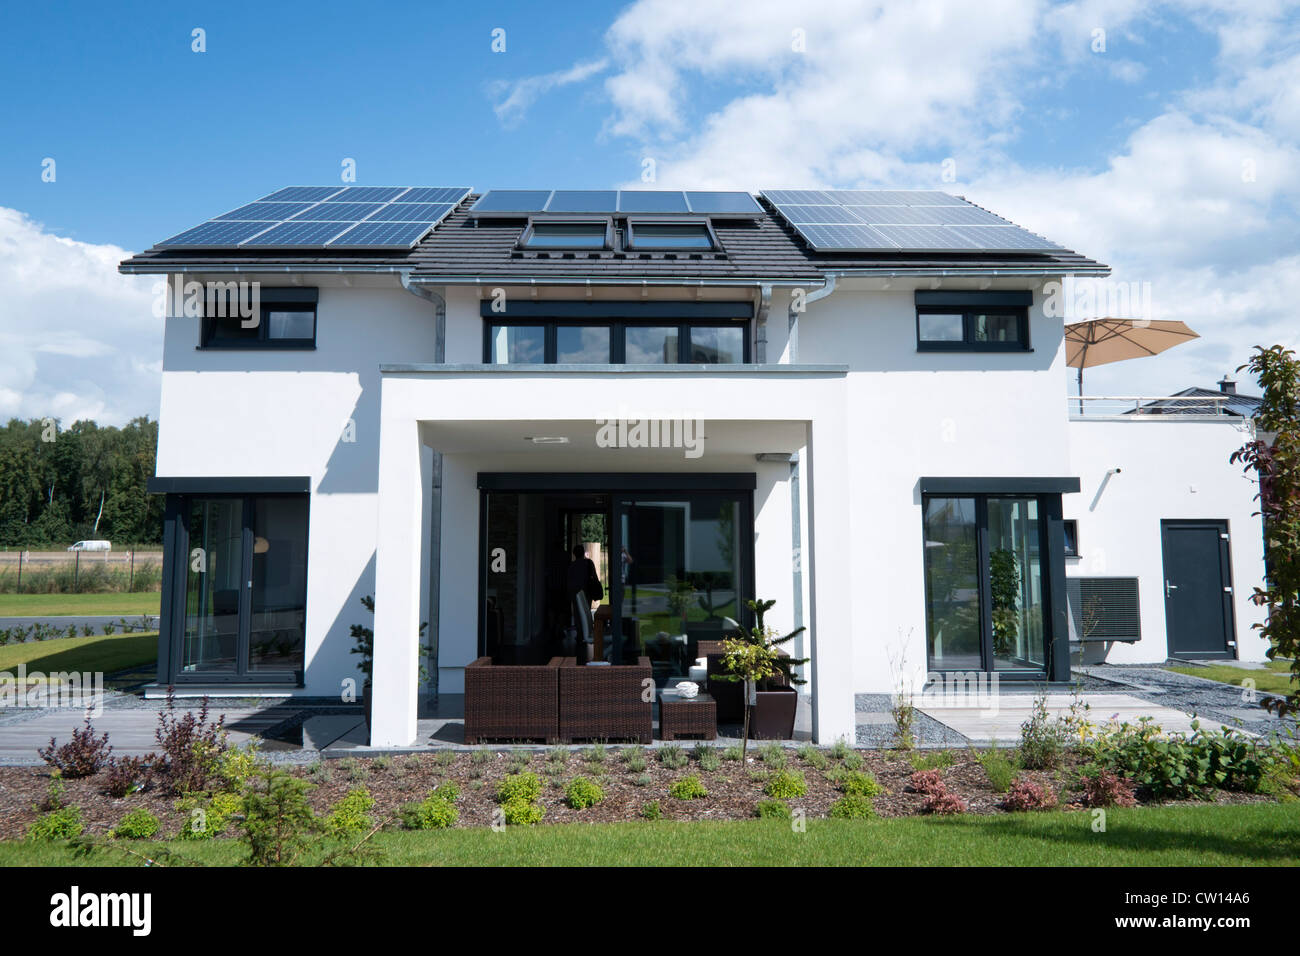 Moderno e altamente efficiente dal punto di vista energetico la casa familiare con pannelli solari sul tetto in Germania Foto Stock